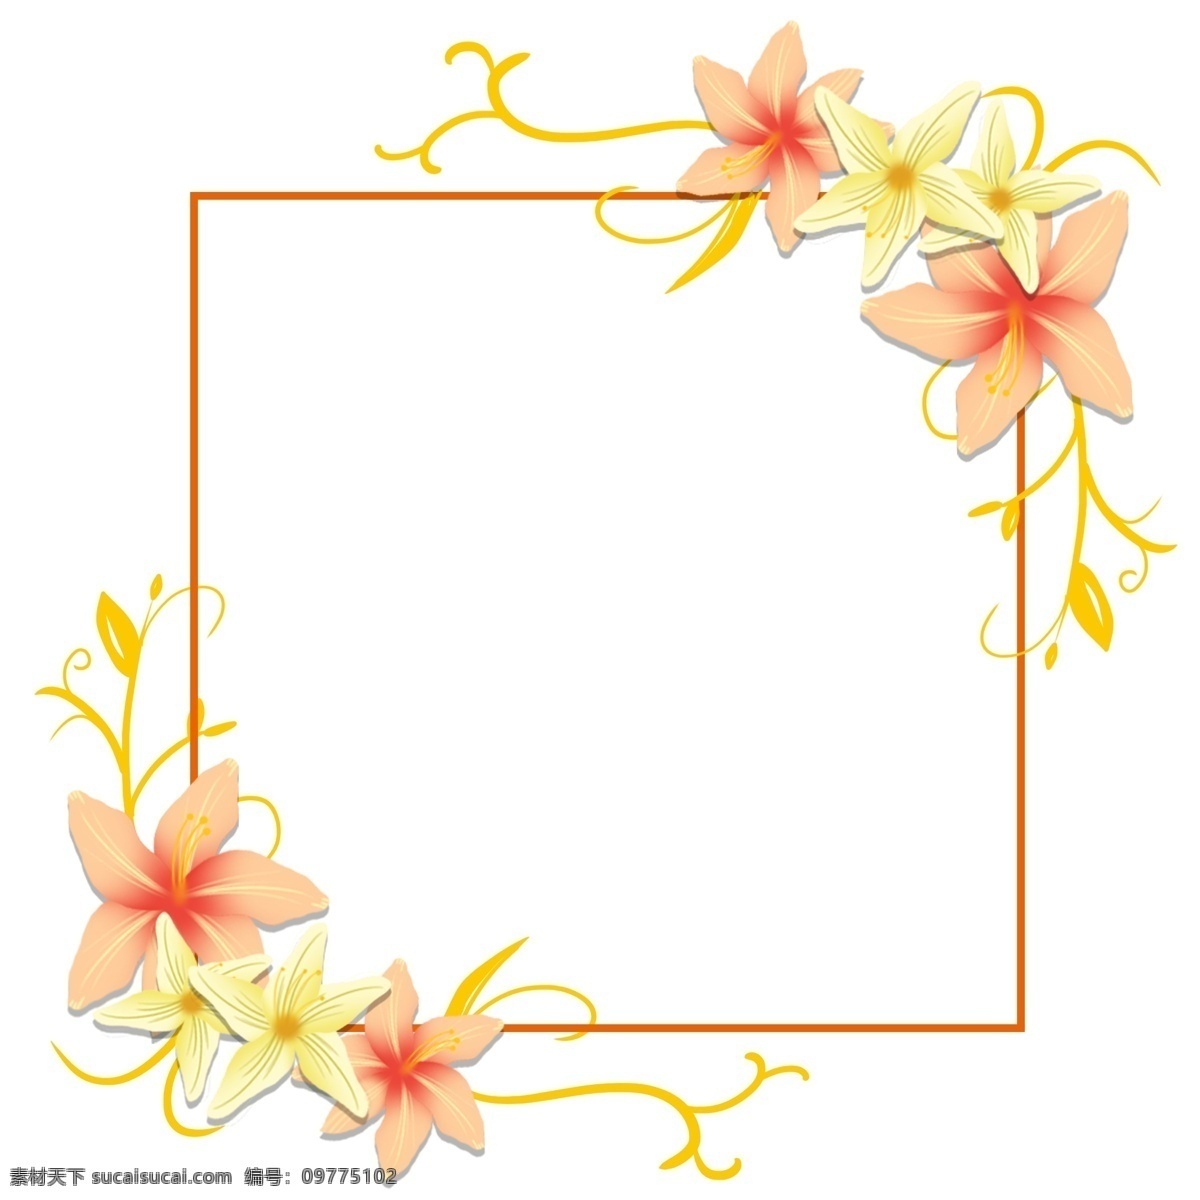 原创 手绘 创意 百合花 装饰 边框 创意百合 百合 黄色 橙色 曲线 方框 橙色百合花 图案